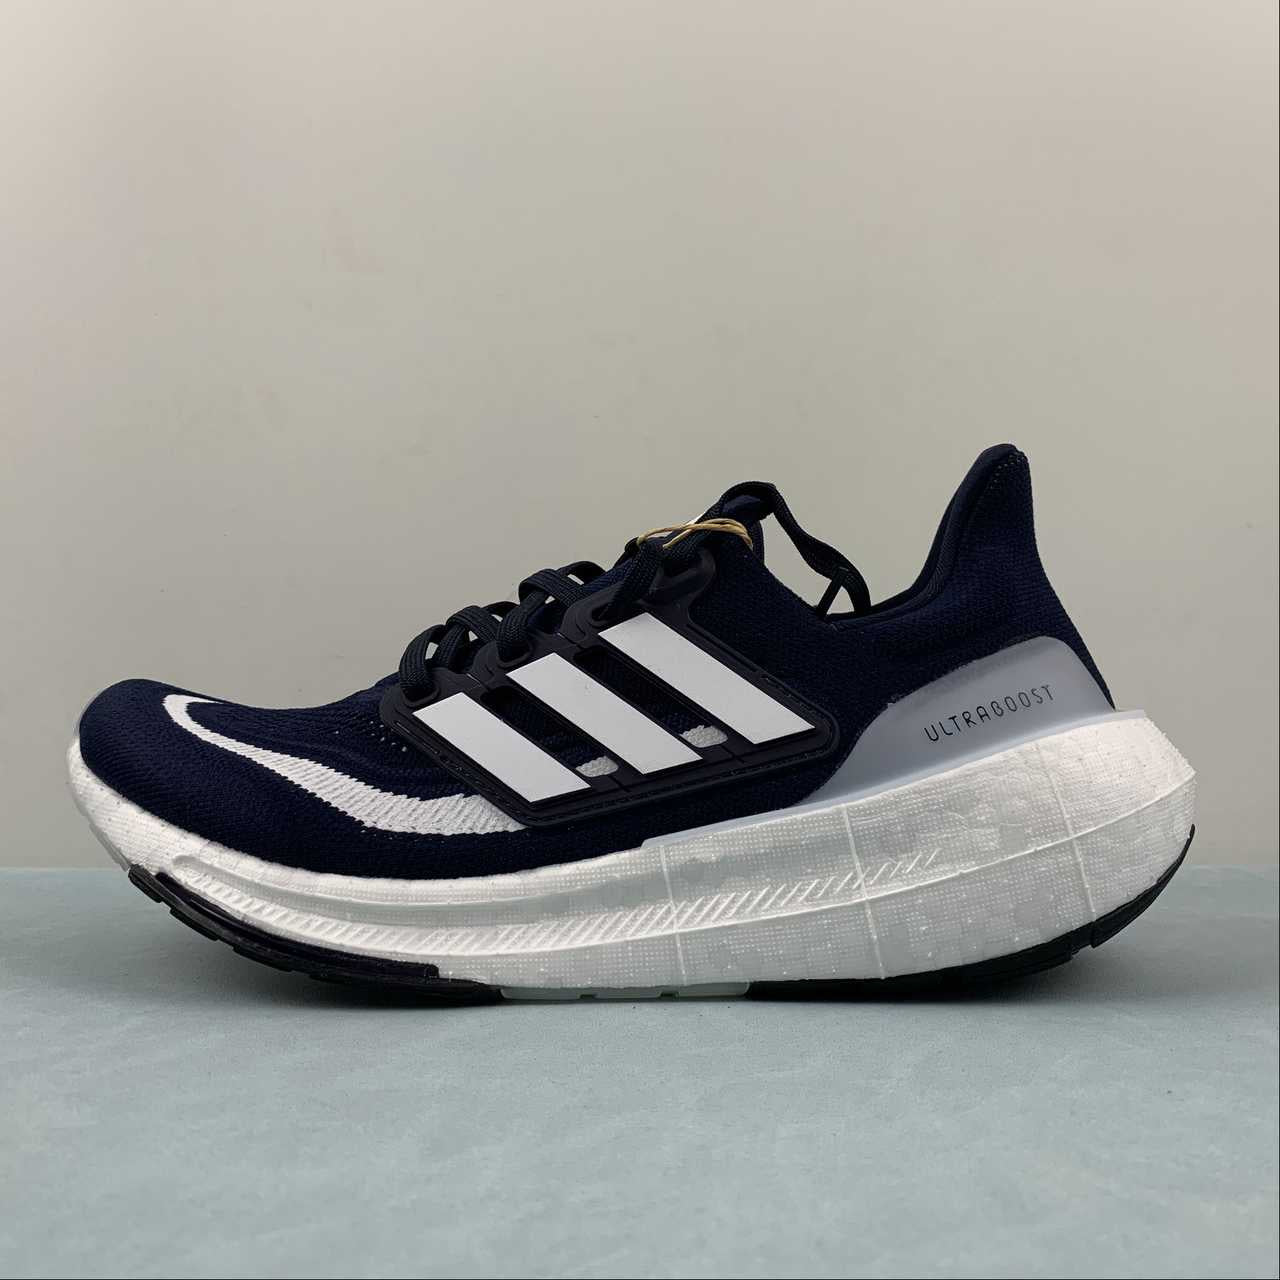 Chaussures Adidas ultraboost bleu marine